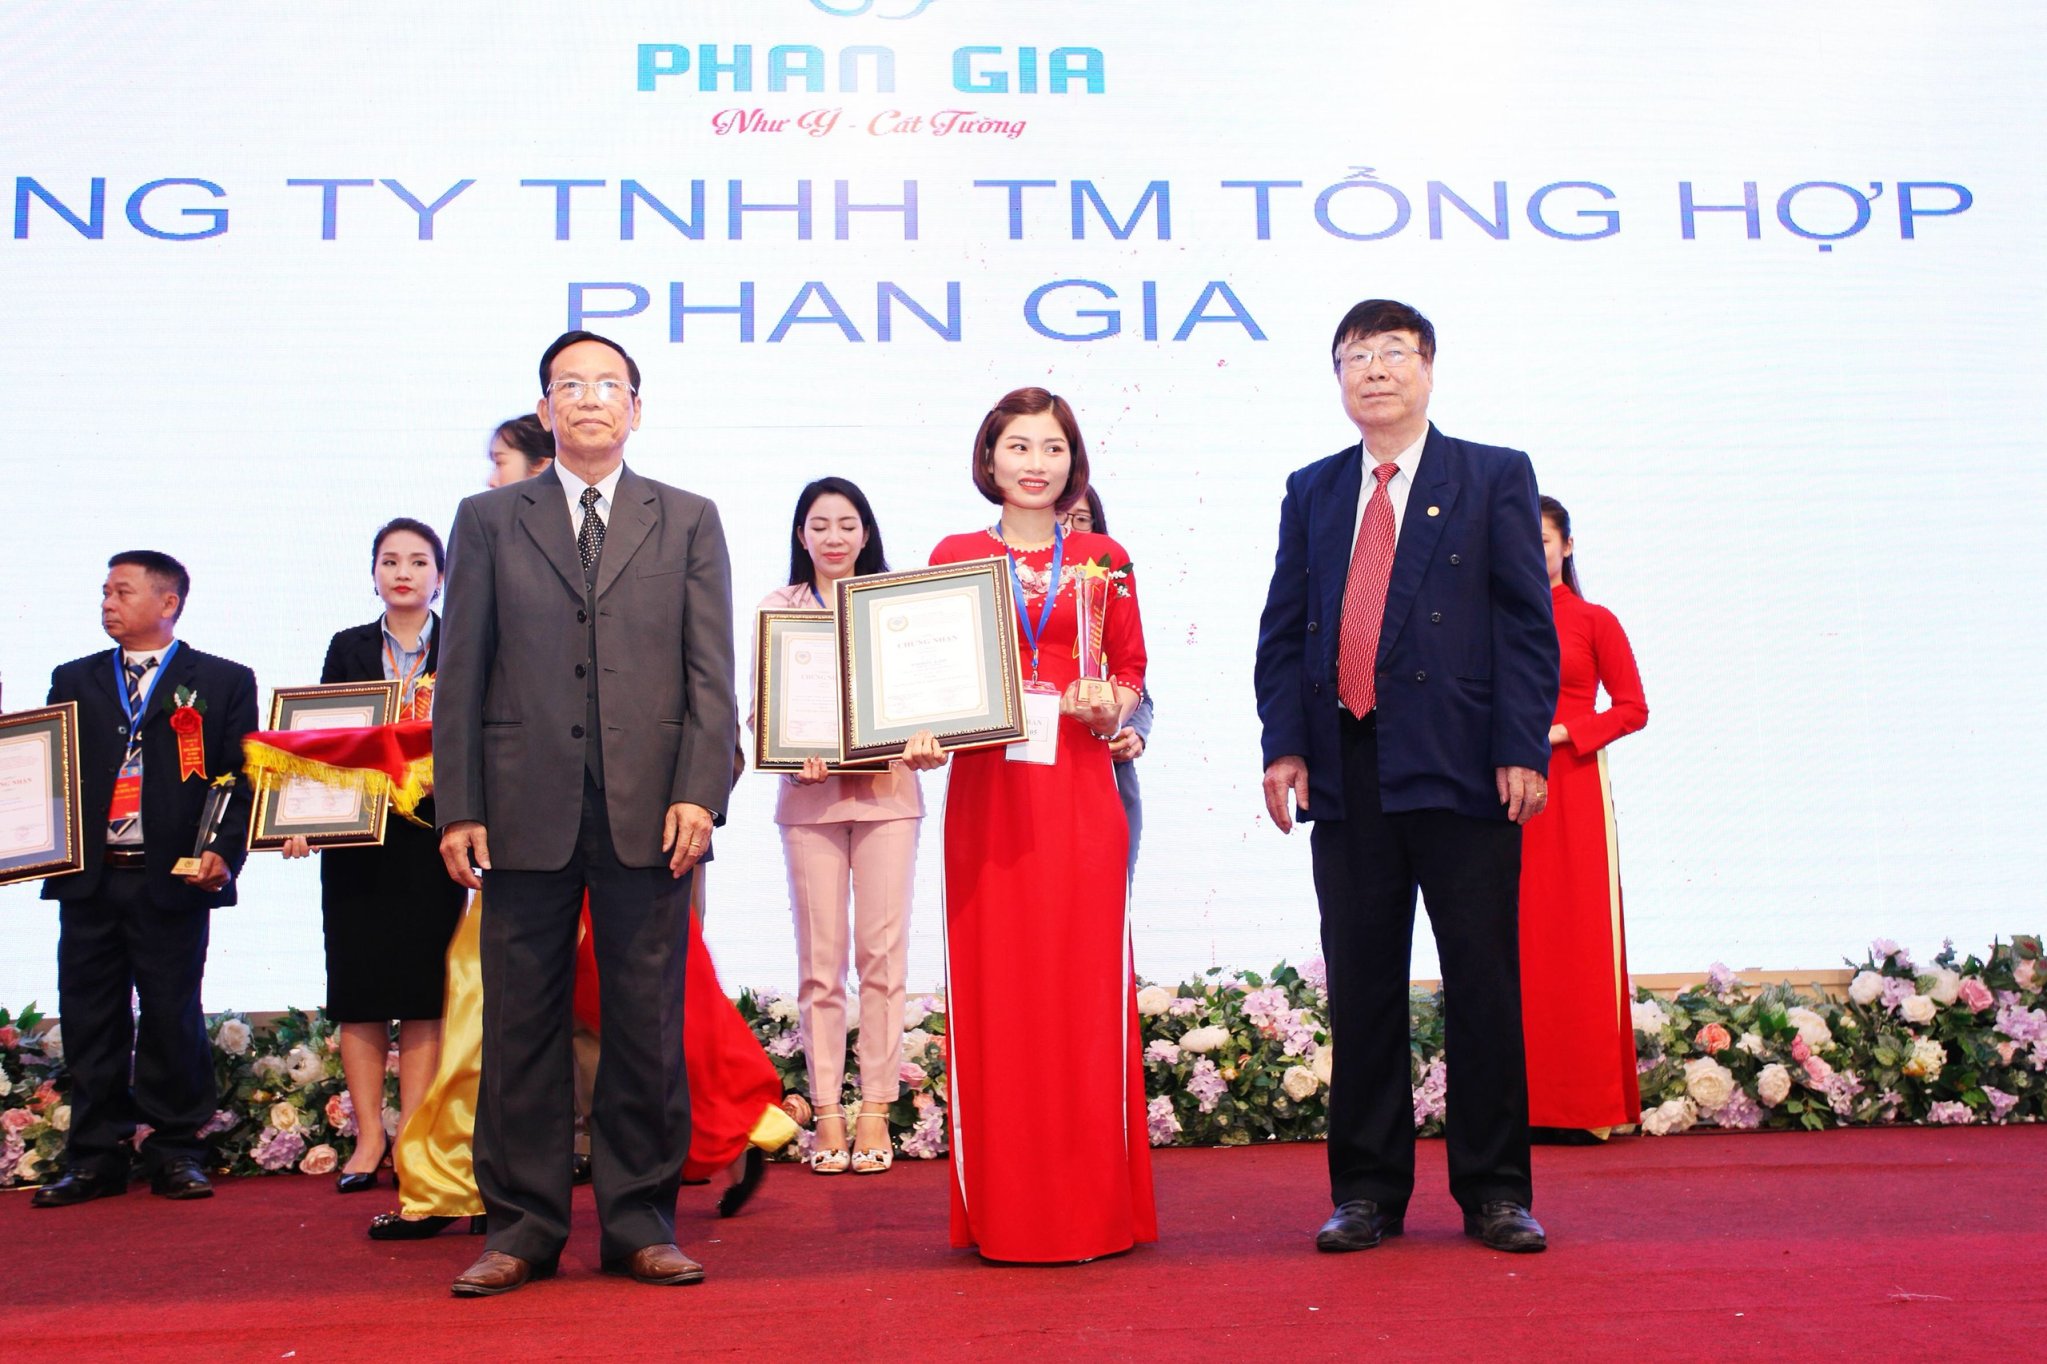  Phan Gia nhận giải thưởng " TOP 50 thương hiệu phát triển kinh tế quốc gia"